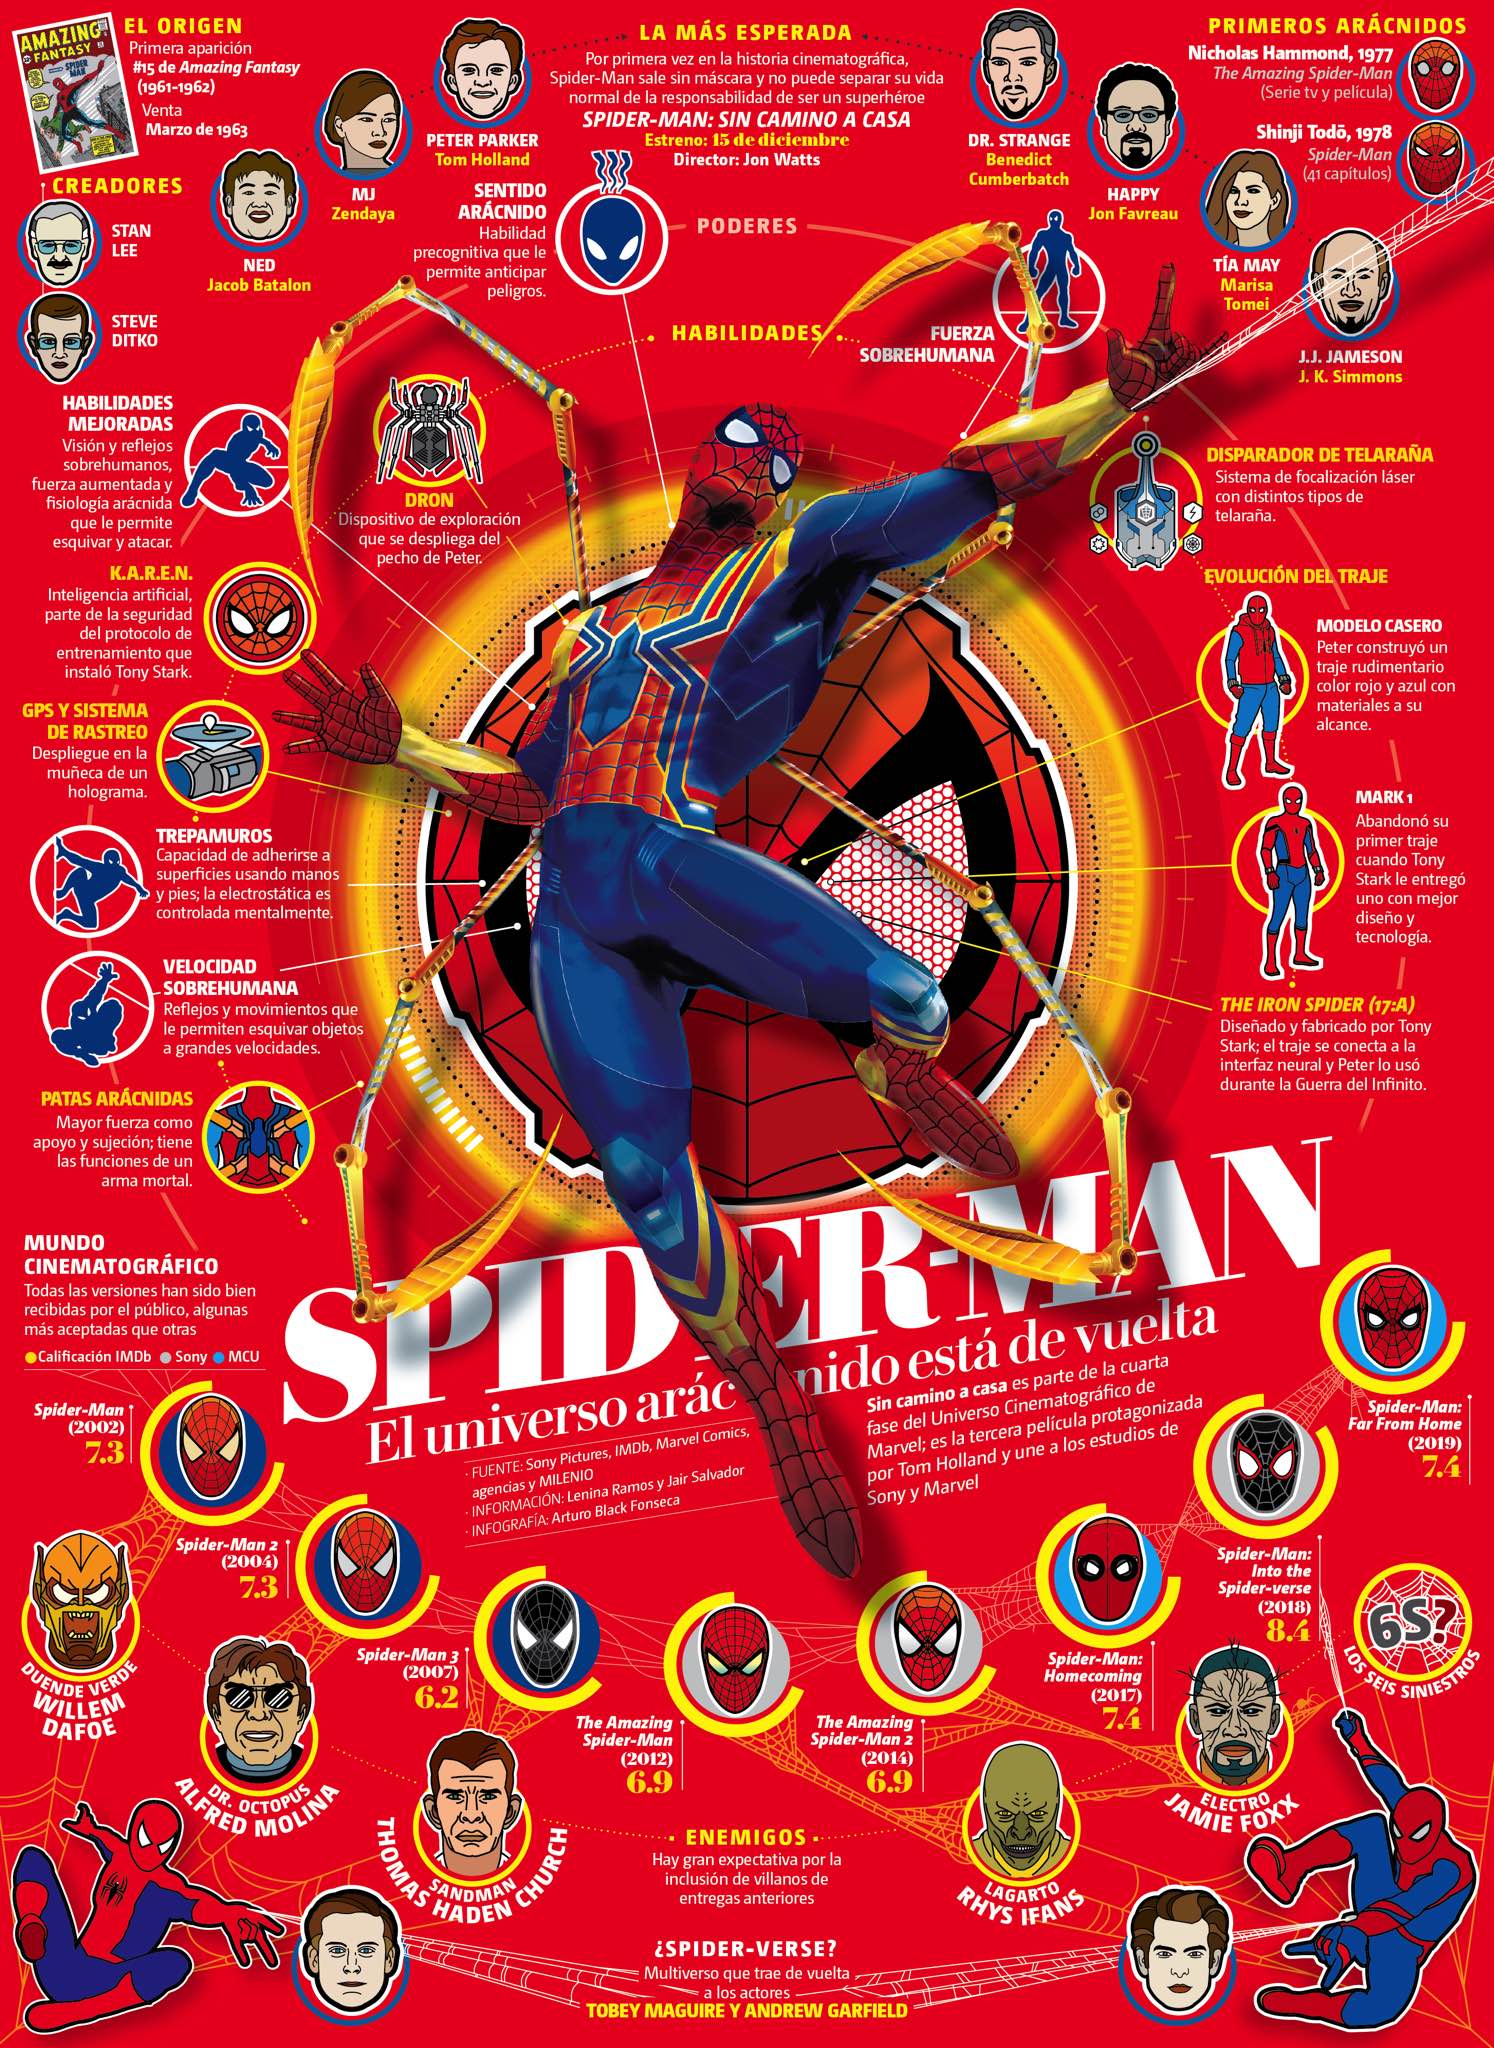 Spiderman: El universo arácnido está de vuelta